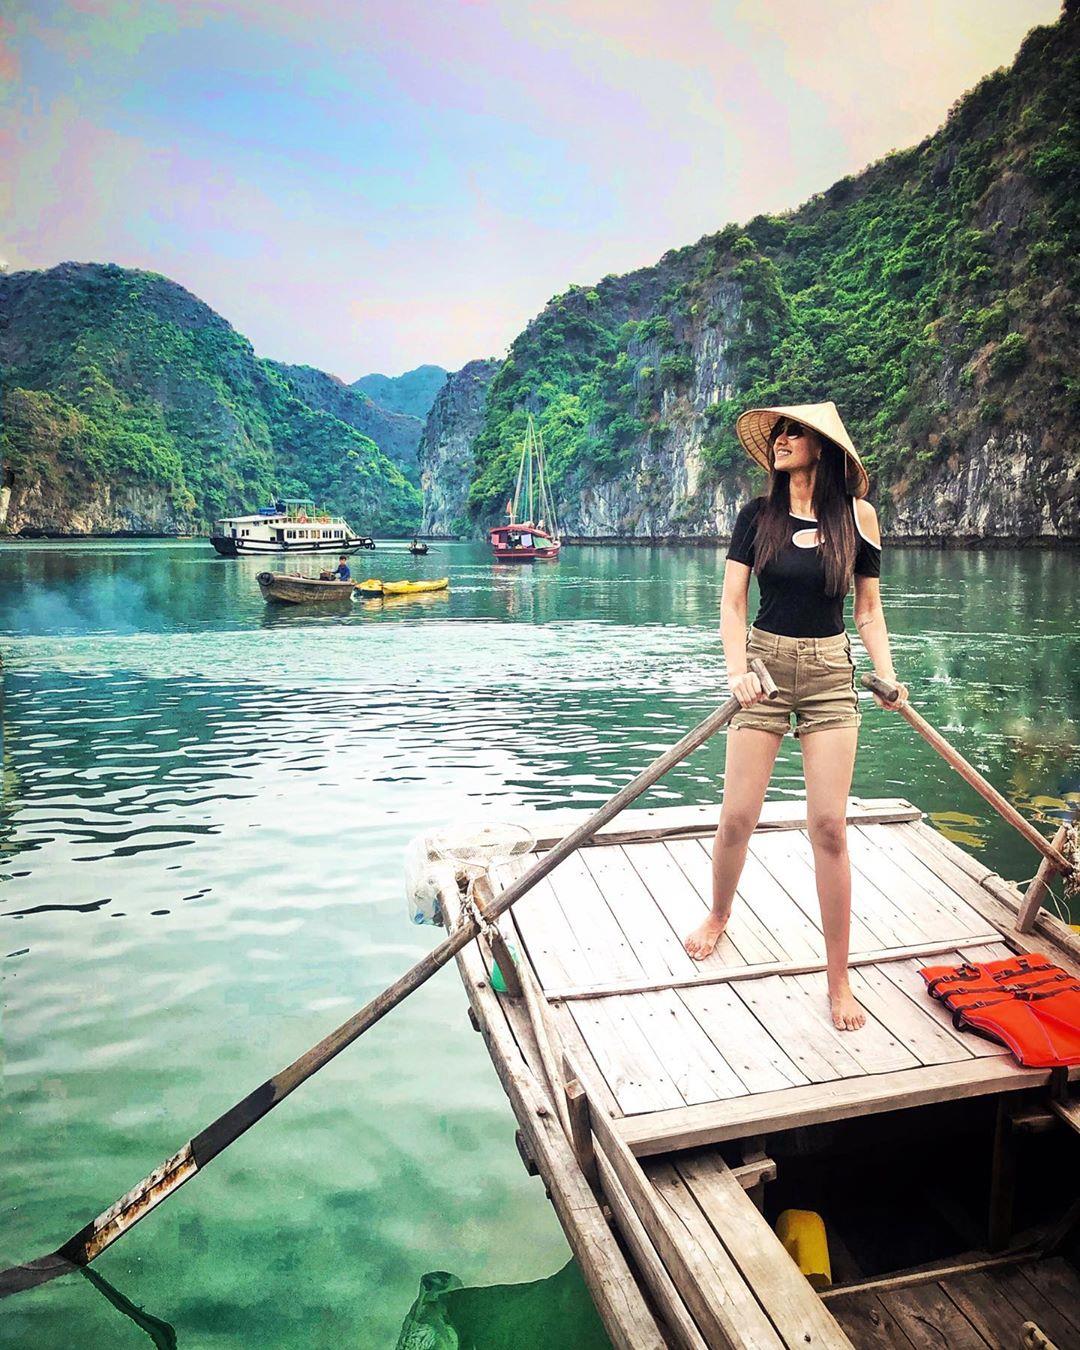 Quảng Ninh - Địa điểm du lịch hè miền Bắc cho muôn vàn trải nghiệm